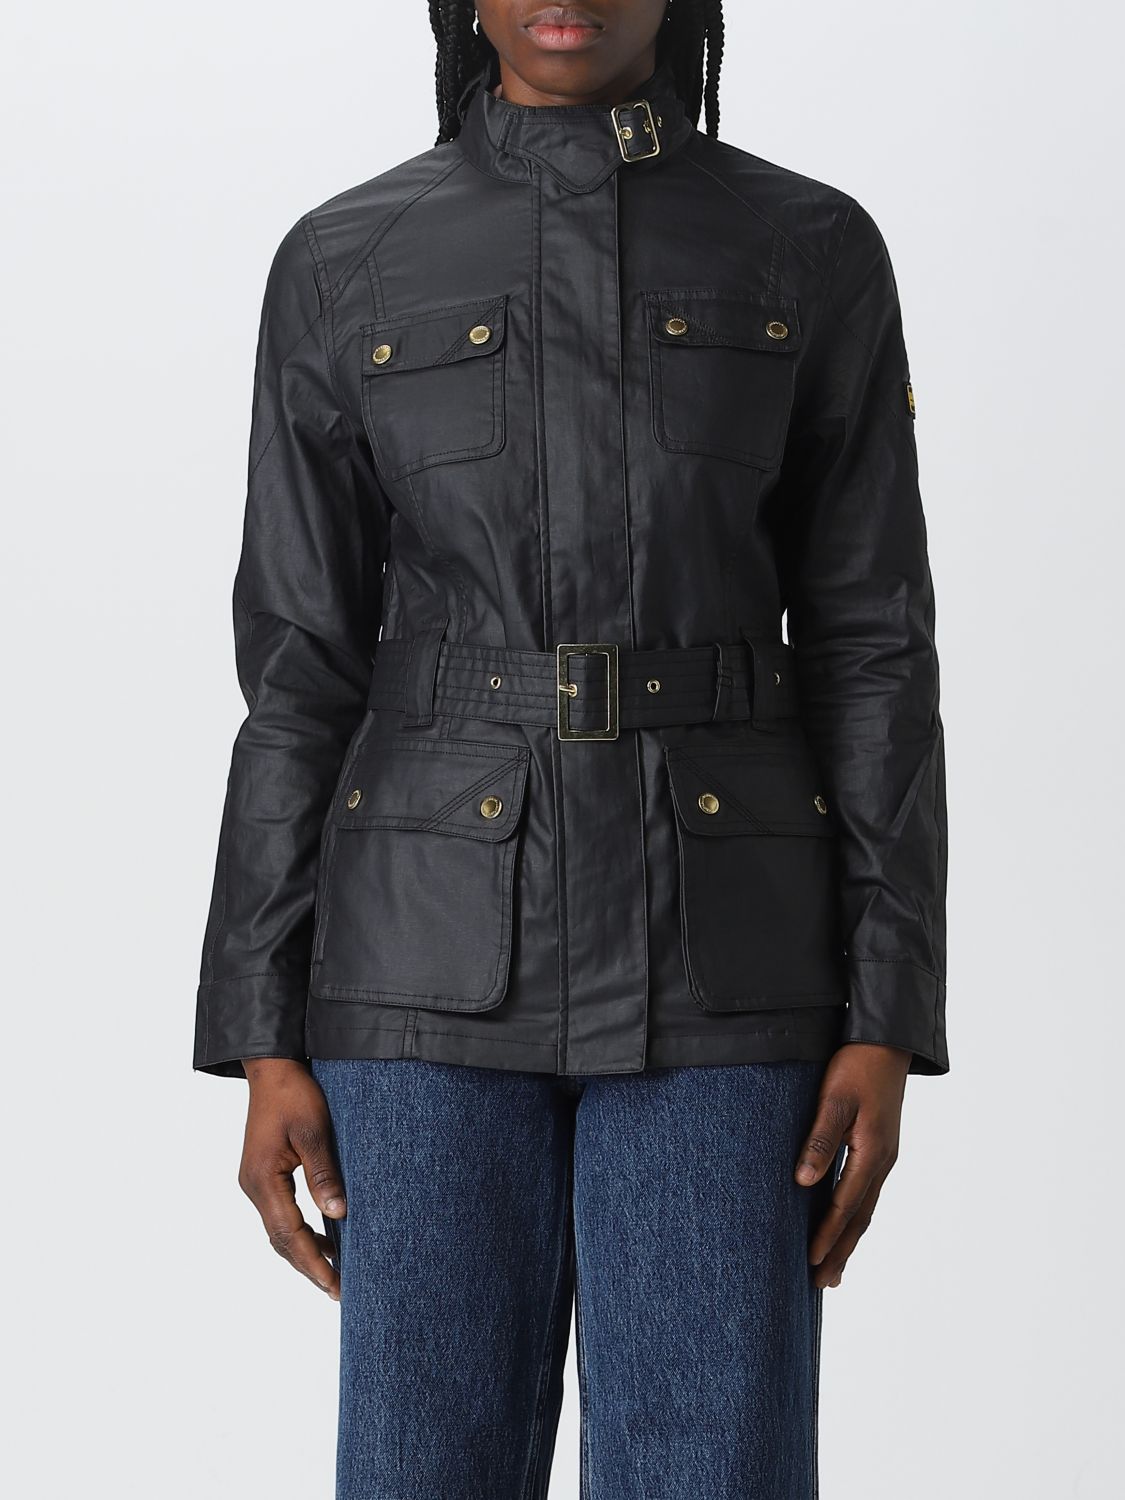 Wijde selectie persoonlijkheid onthouden BARBOUR: jacket for woman - Black | Barbour jacket LCA0203 online on  GIGLIO.COM